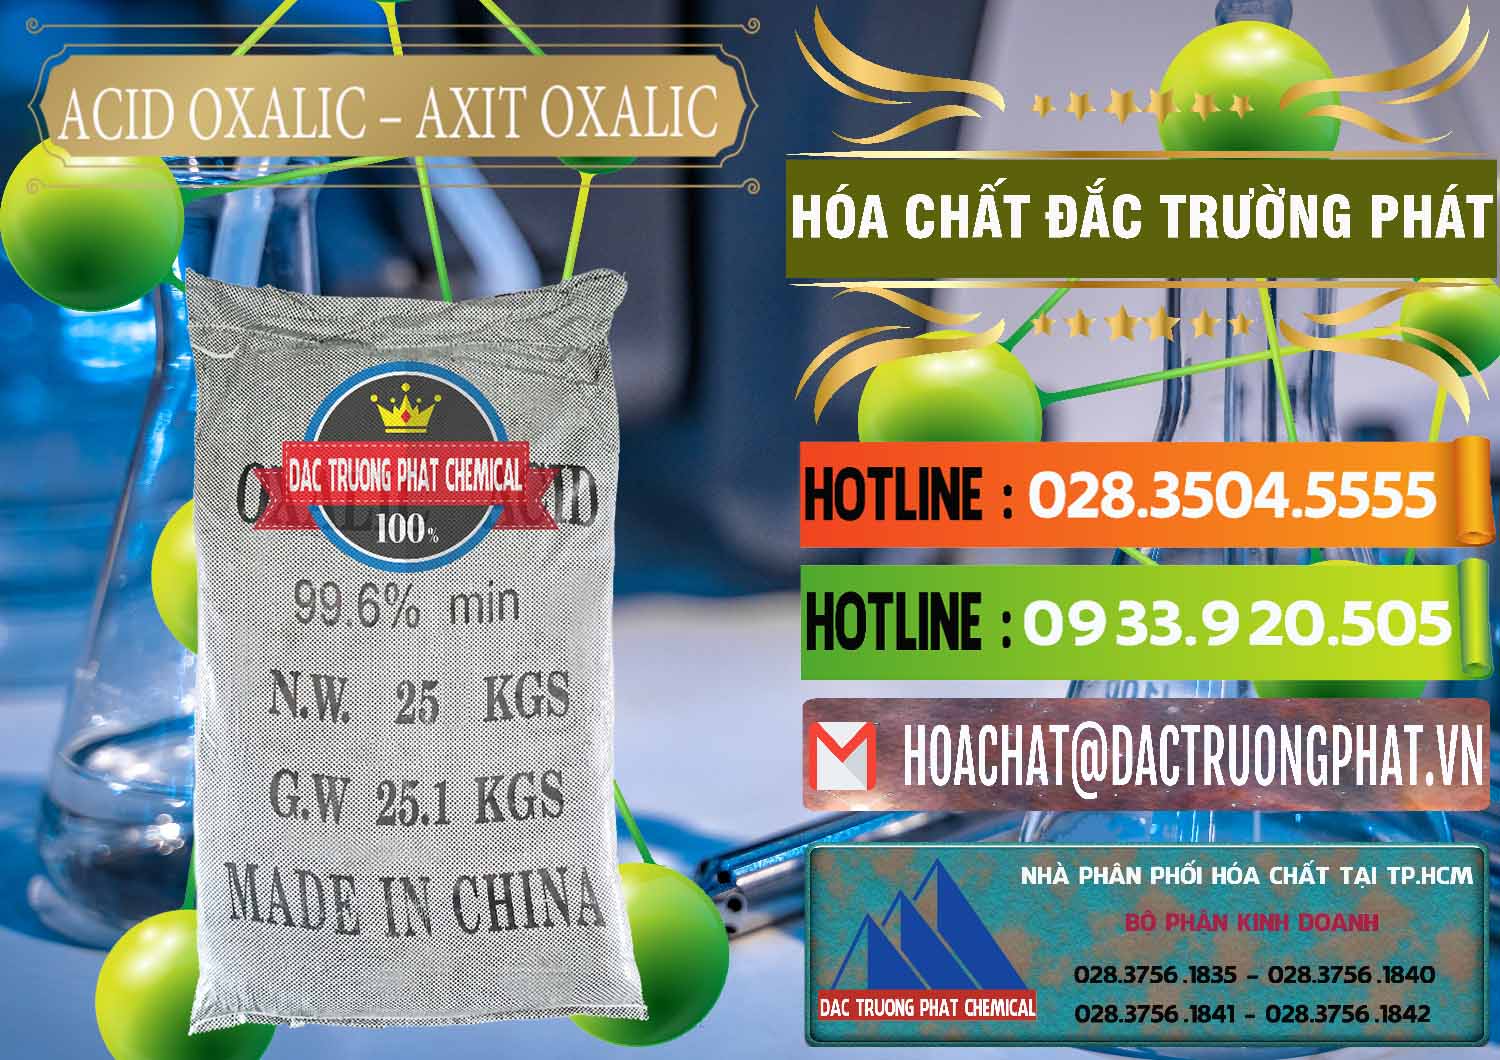 Công ty chuyên cung cấp & bán Acid Oxalic – Axit Oxalic 99.6% Trung Quốc China - 0014 - Nơi chuyên nhập khẩu và phân phối hóa chất tại TP.HCM - cungcaphoachat.com.vn